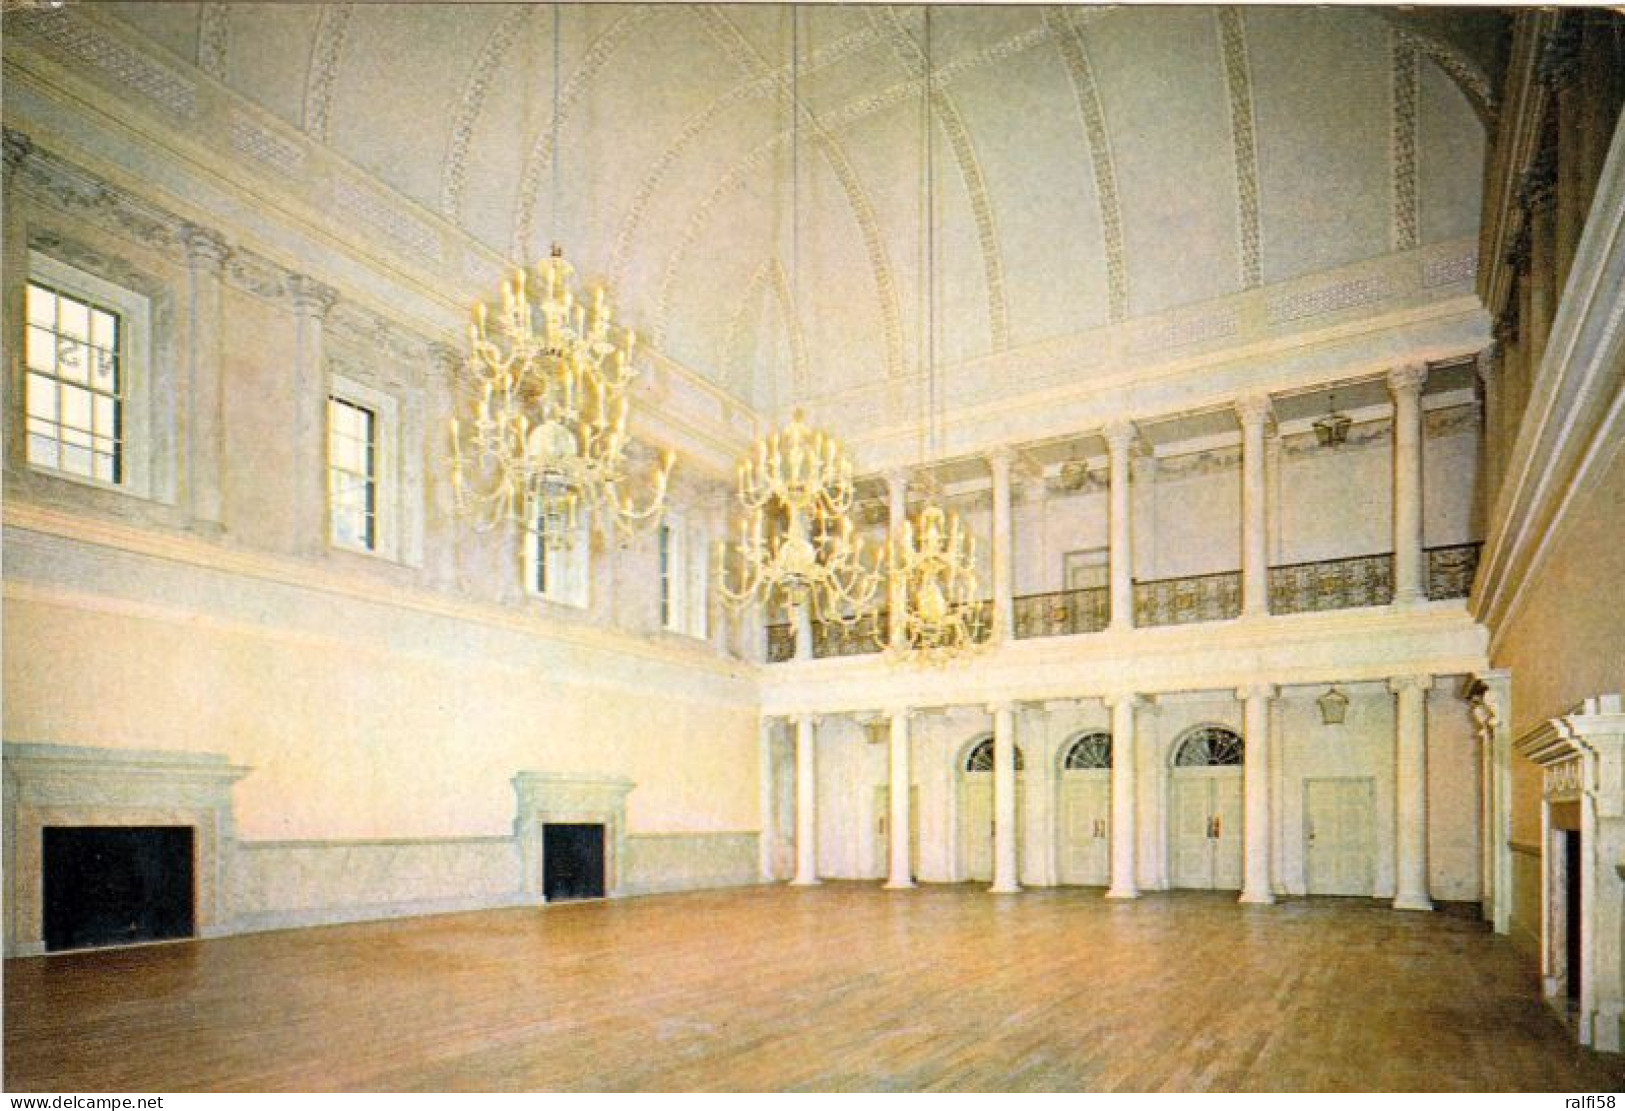 2 AK England * Bath Assembly Rooms - Die Versammlungsräume In Bath Erbaut Im 18. Jh. - Seit 1987 UNESCO Weltkulturerbe * - Bath